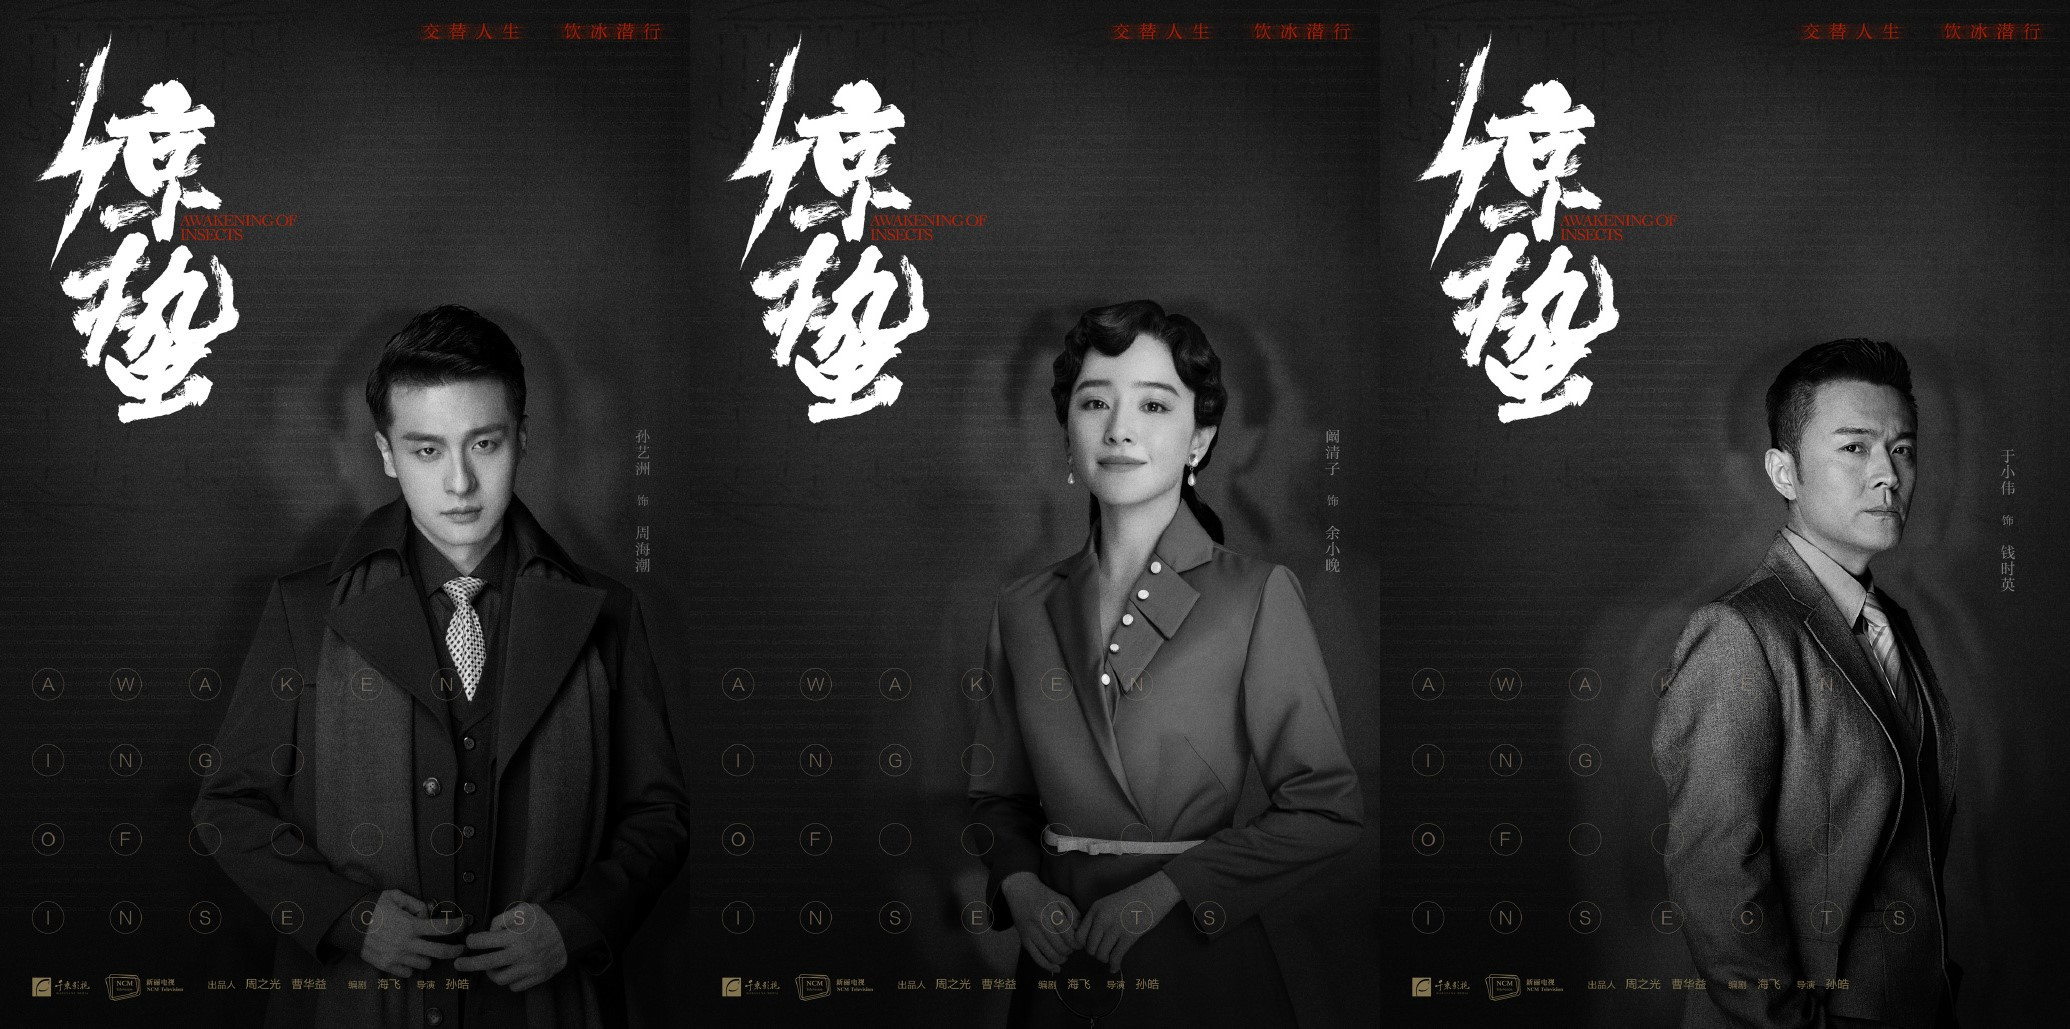 除了张若昀和王鸥这两名主演之外,电视剧《惊蛰》的其他演员也个个来